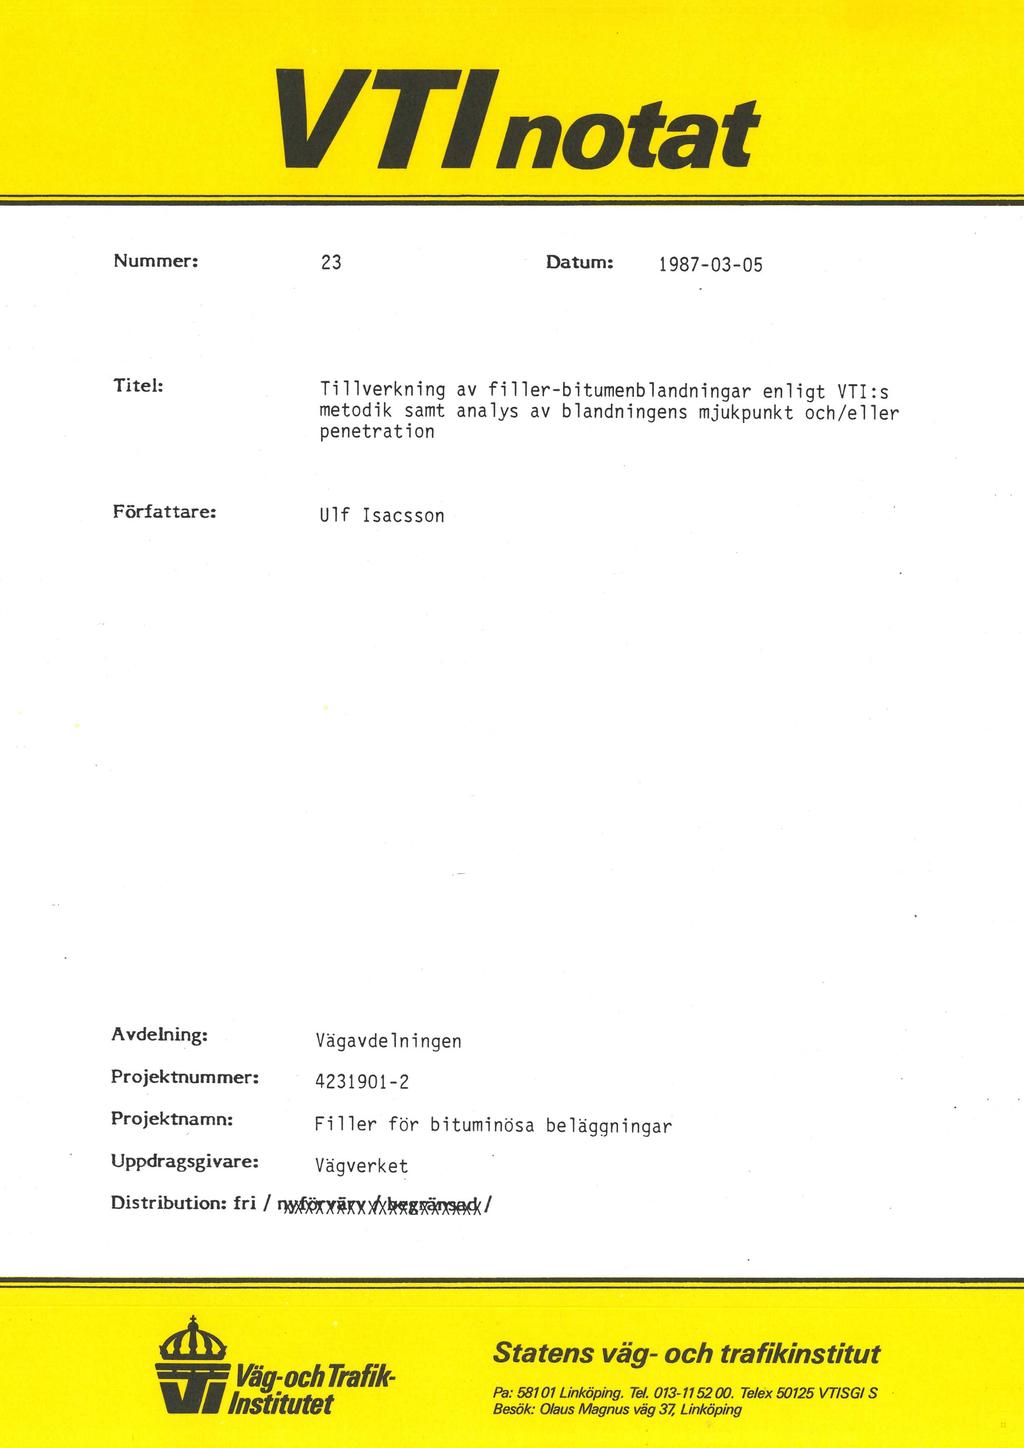 VLTfnotat Nummer: 23 Datum: 1987-03-05 Titel: Tillverkning av filler-bitumenblandningar enligt VTI:s metodik samt analys av blandningens mjukpunkt och/eller penetration Författare: Ulf Isacsson